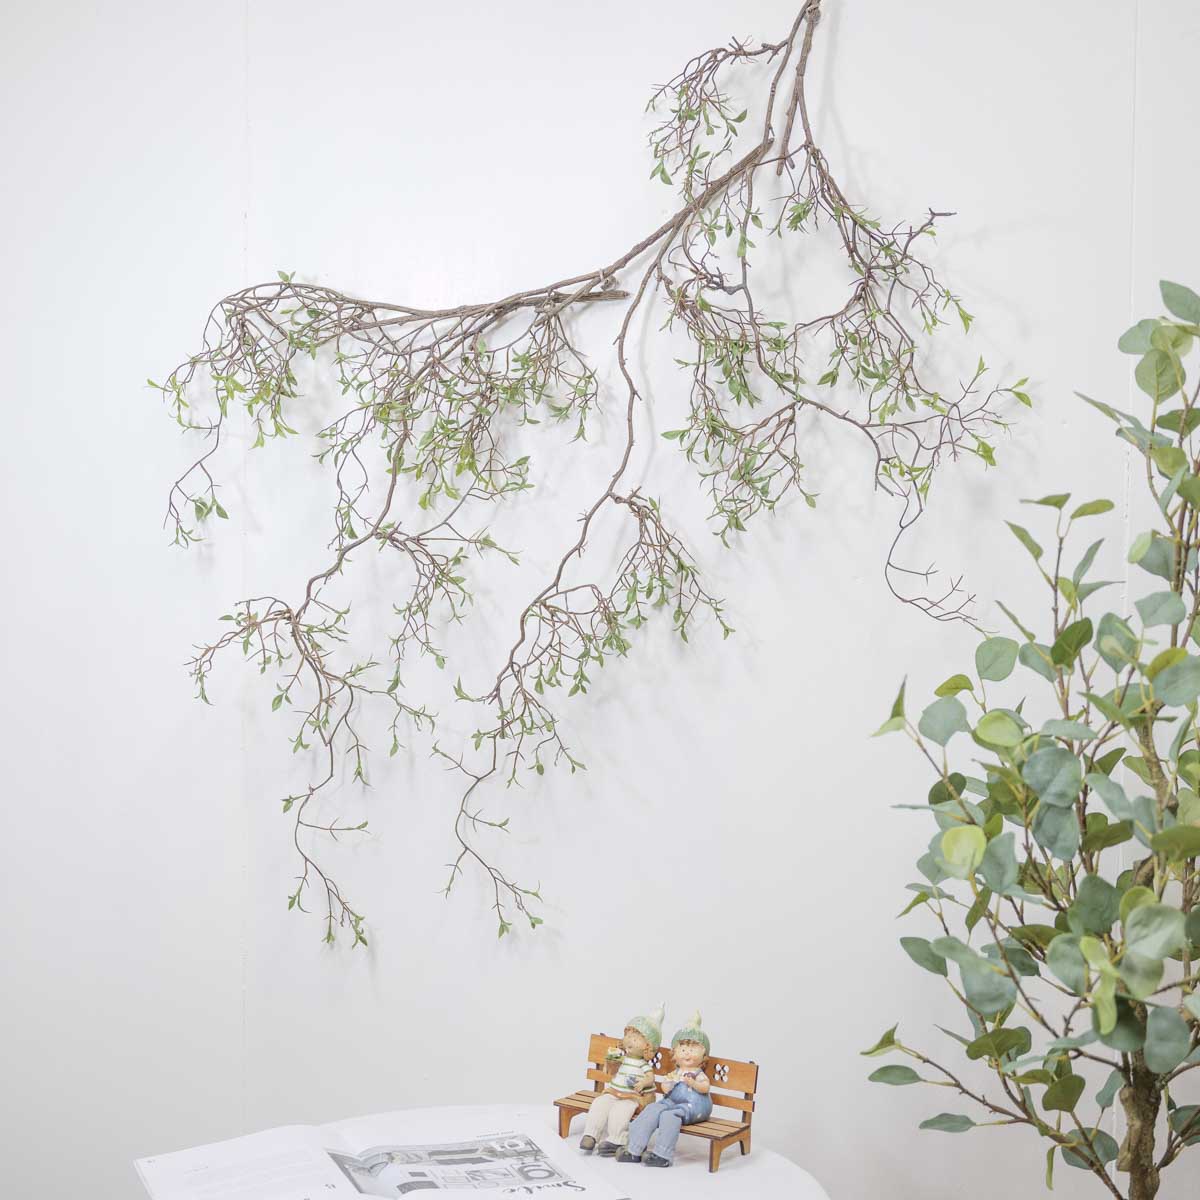 조화식물 버드나무 새순잎 바인 3개를 벽에 늘어지게 이어붙인 사진